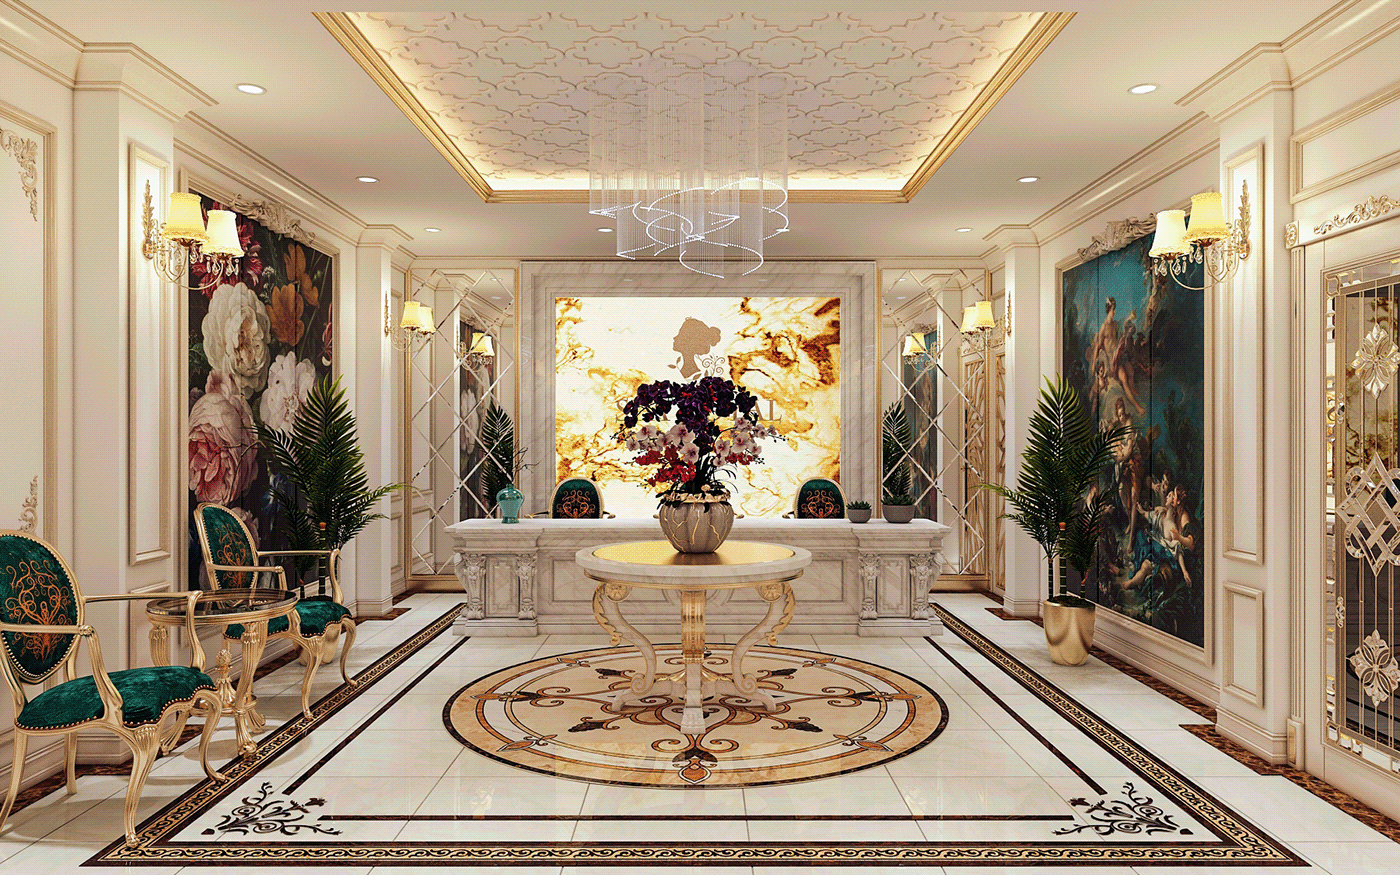 3ds max beauty corona interior design  Render salon Spa bathtub